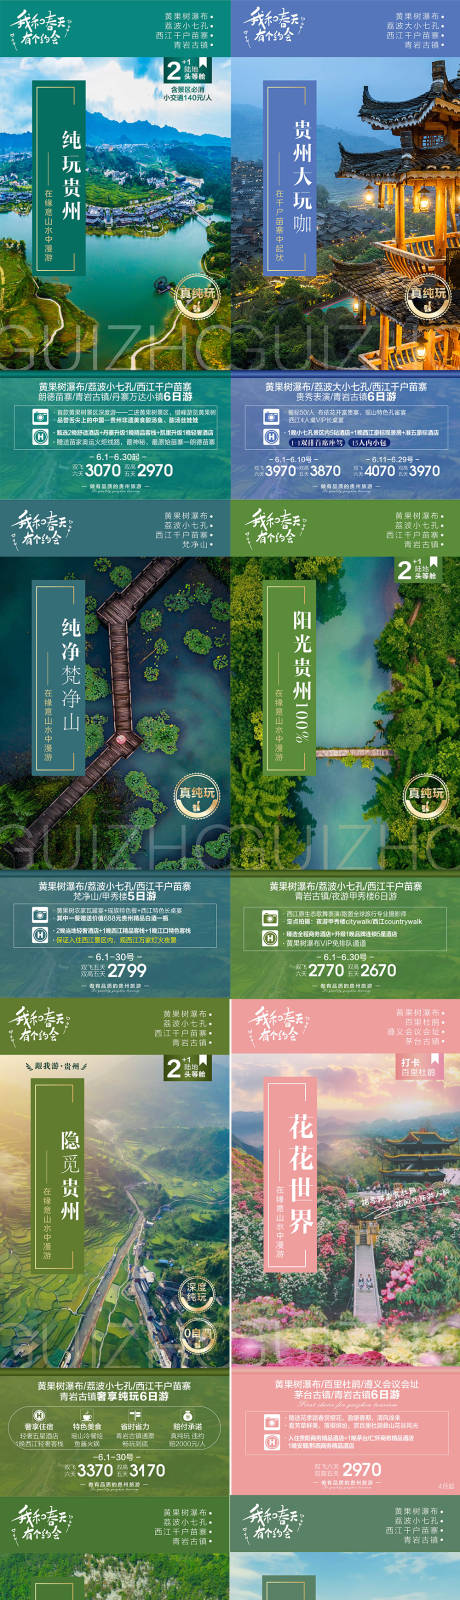 贵州旅游海报系列图